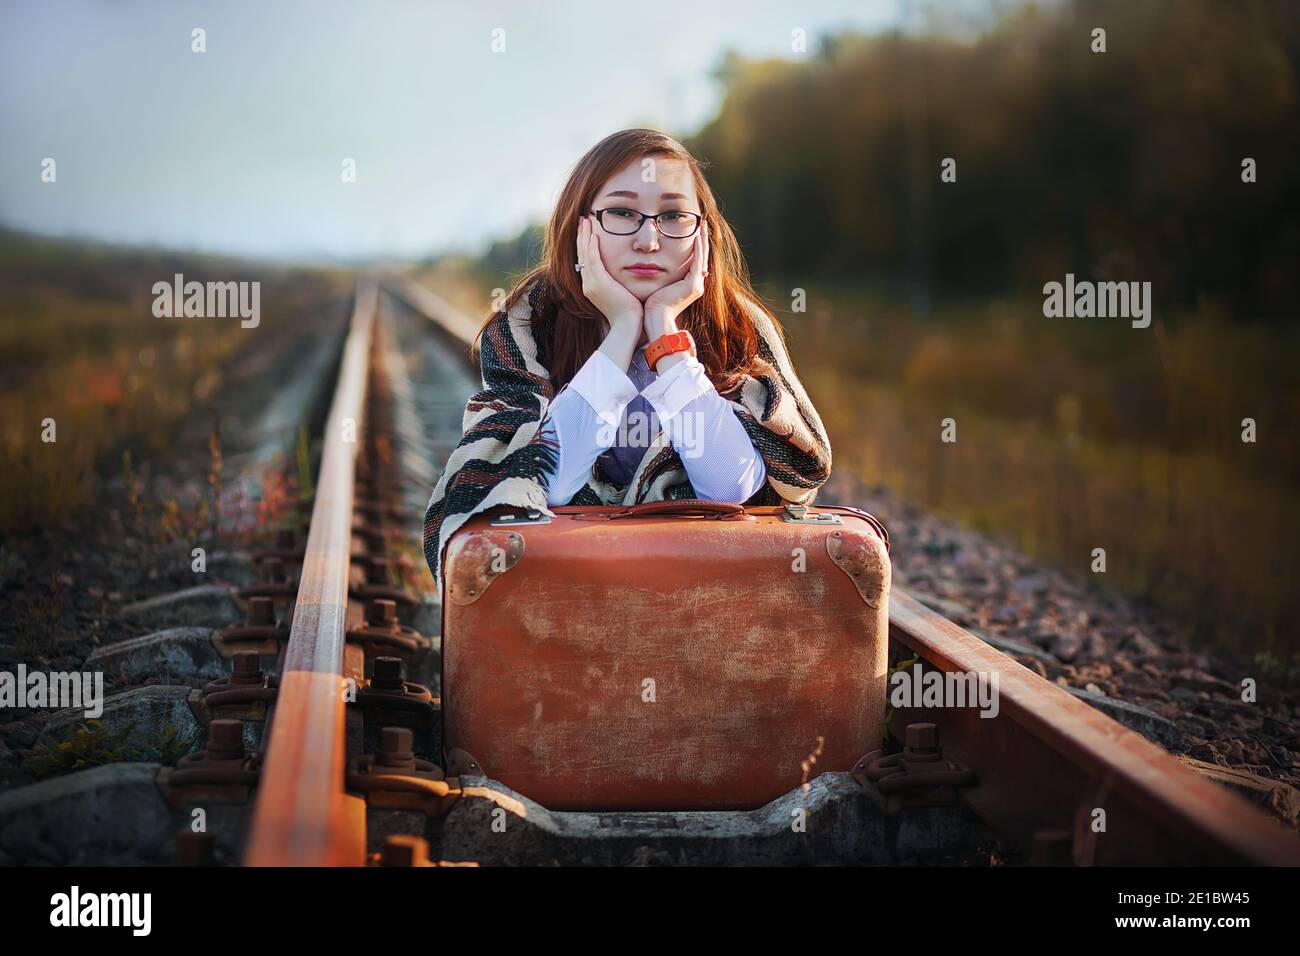 Eine schöne junge Frau in Brille und mit einem alten braunen Koffer sitzt auf den Gleisen und wartet leider auf die Ankunft des Zuges, um irgendwo hinzufahren. Jou Stockfoto